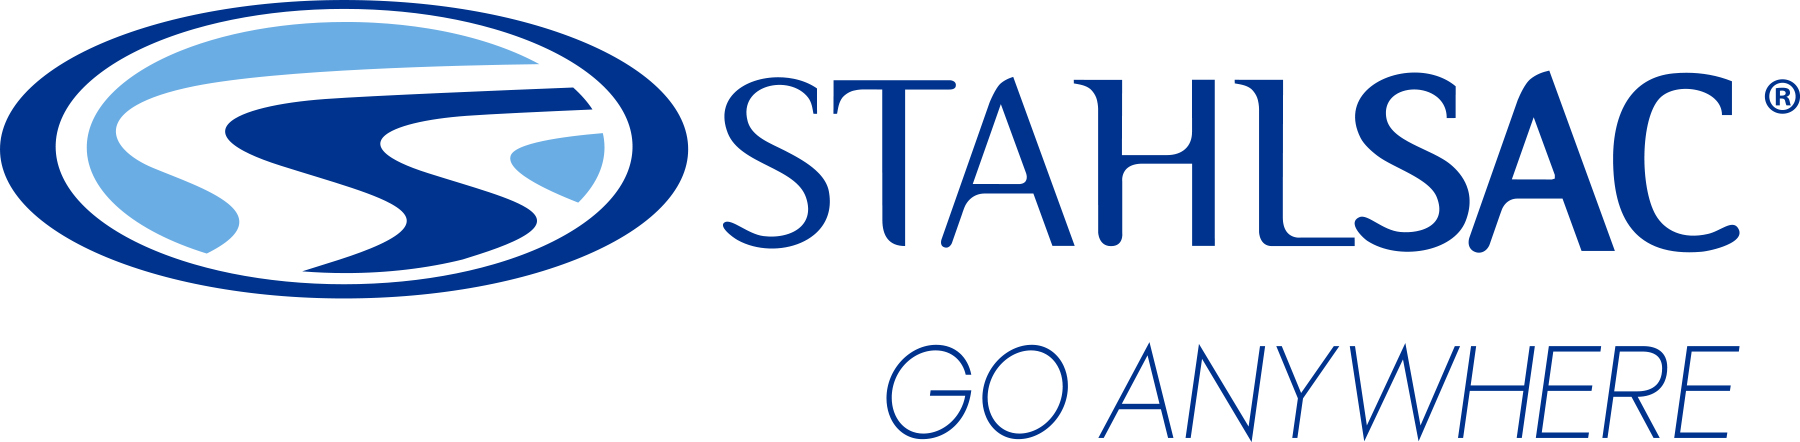 Stahlsac Logo Tagline Registered